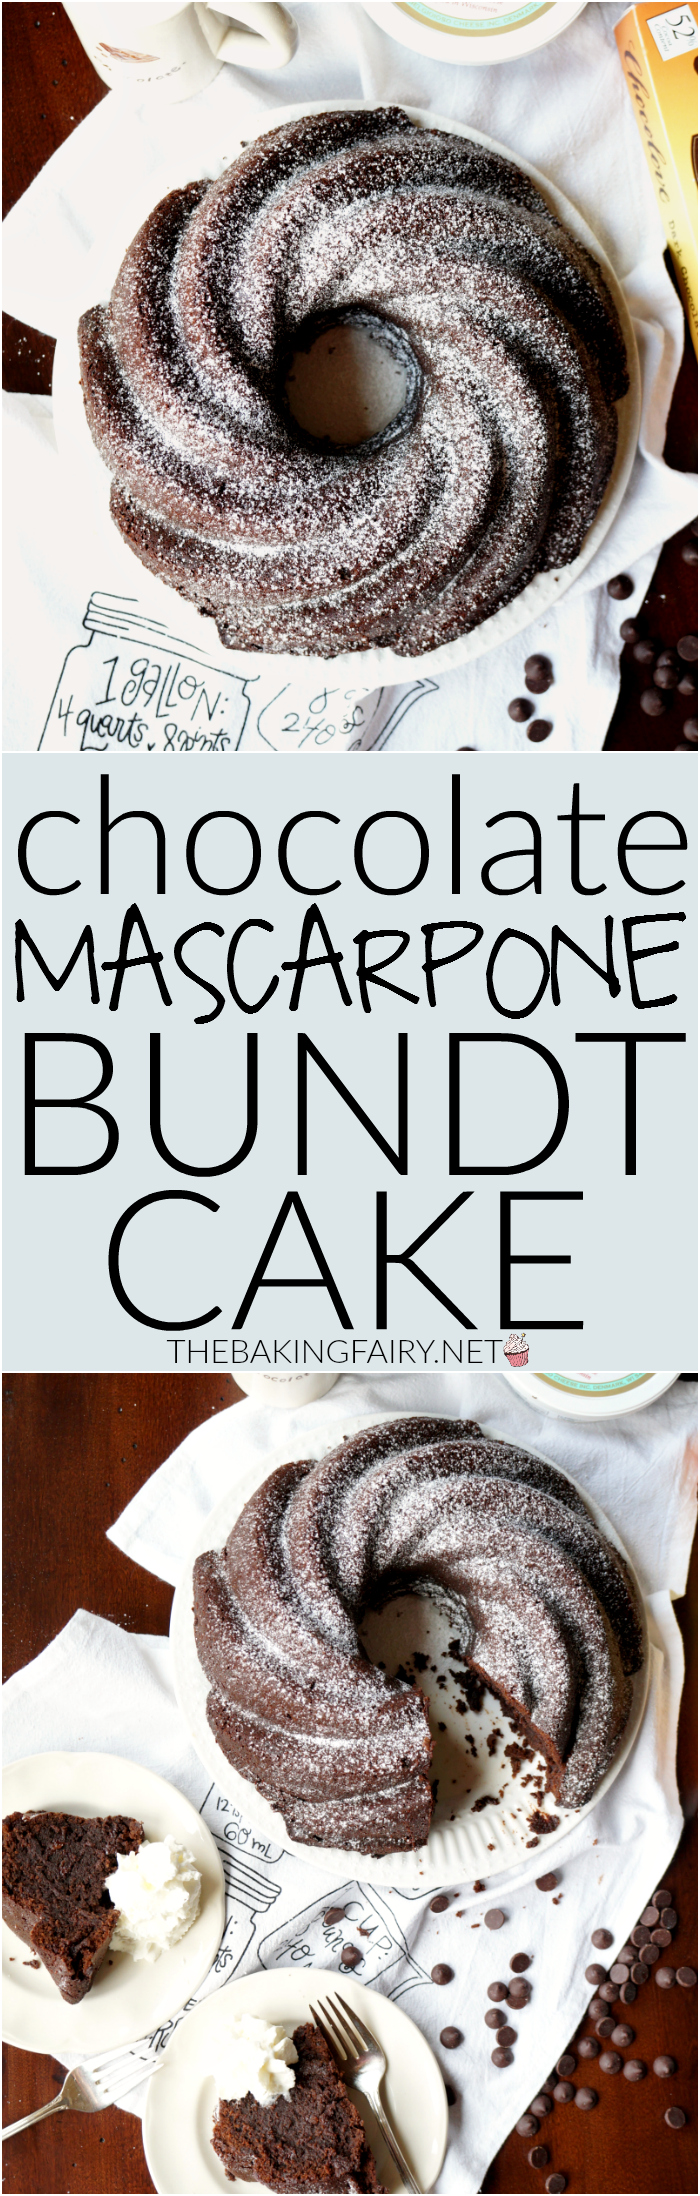 chocolate mascarpone bundt cake | The Baking Fairy